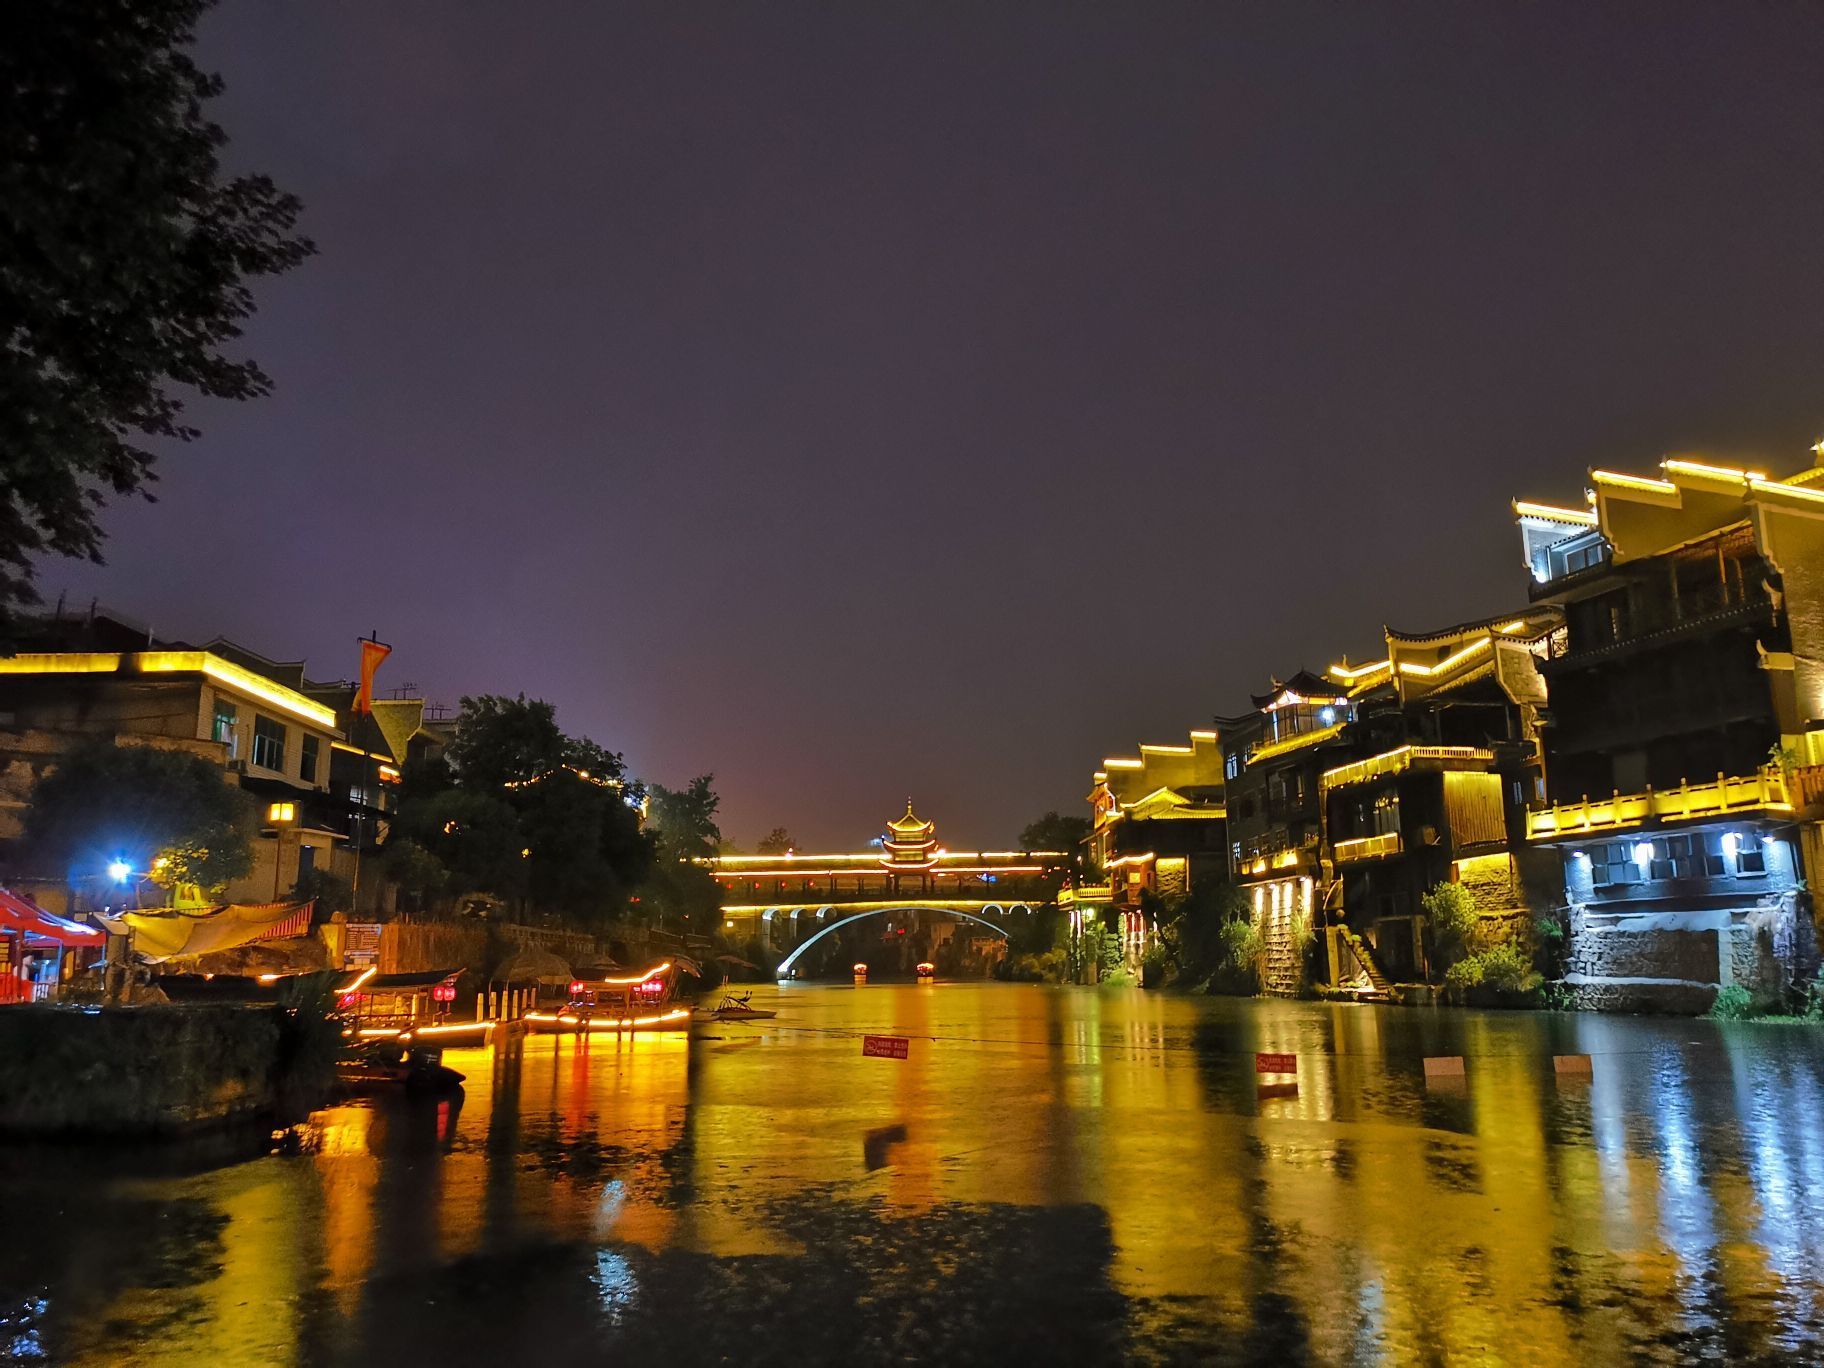 10 Best Things to do in Jishou, Xiangxi - Jishou travel guides 2021 ...